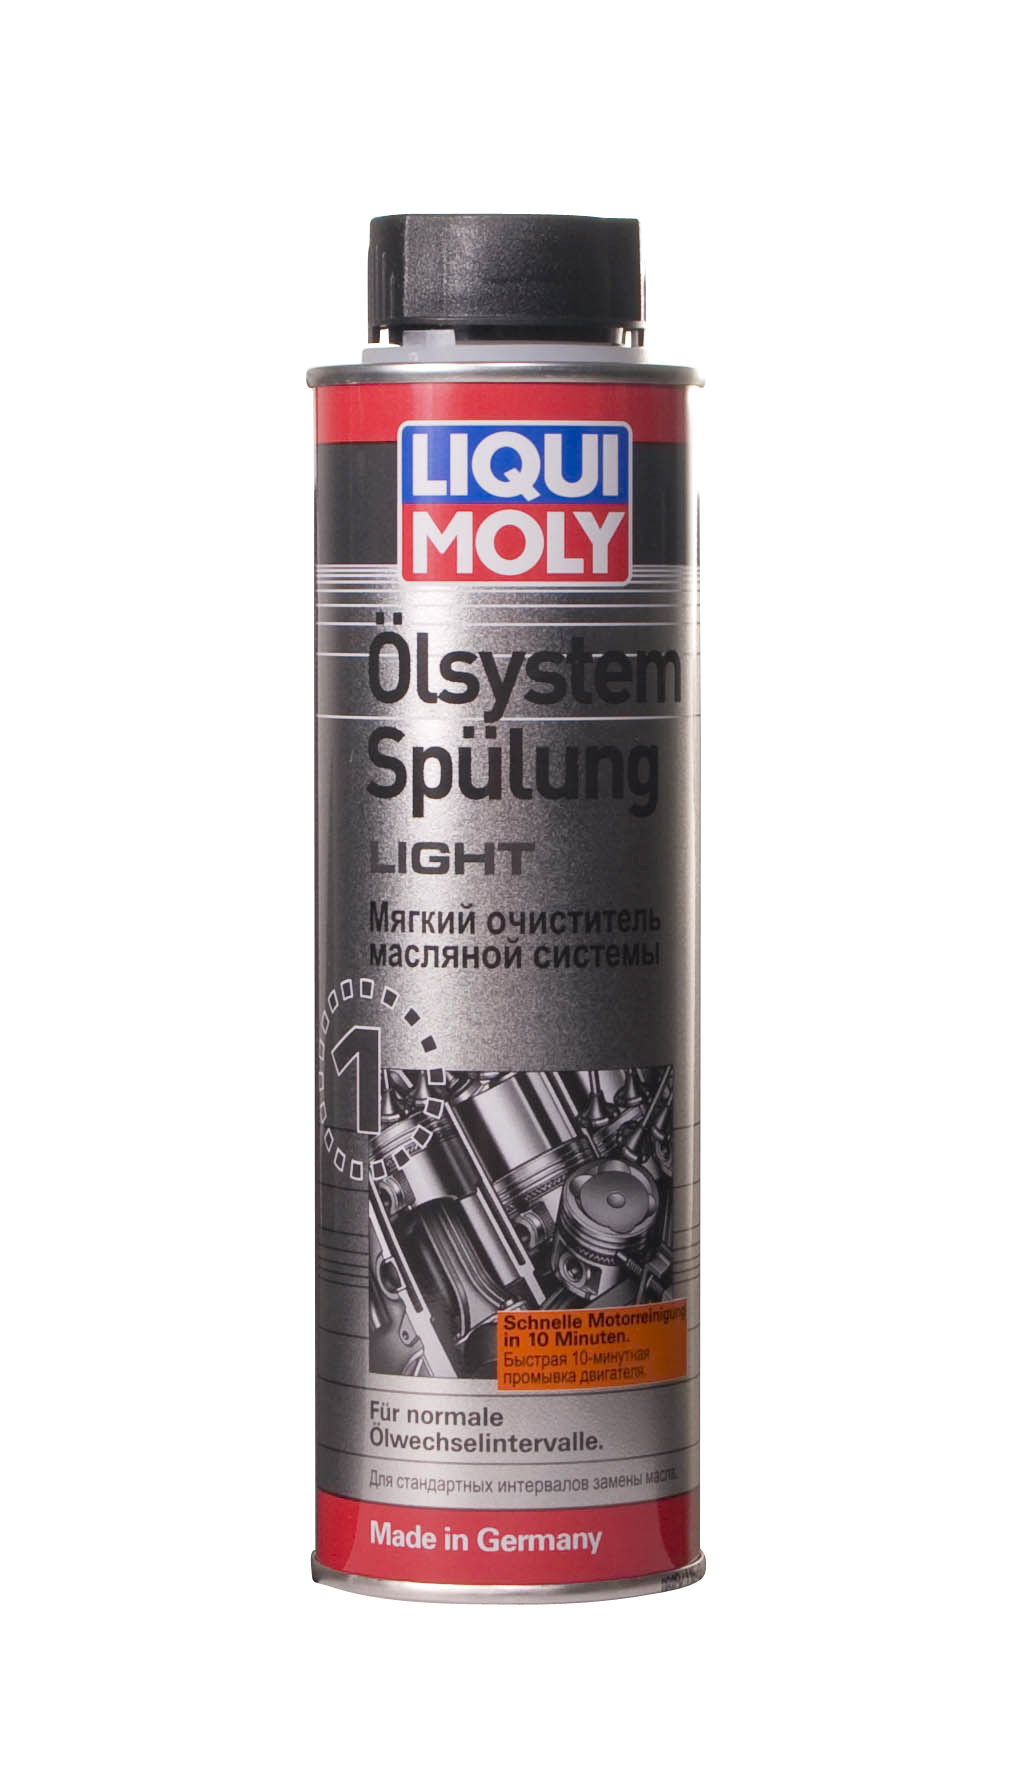 7590 LIQUI MOLY Мягкий очиститель масляной системы Oilsystem Spulung Light – фото